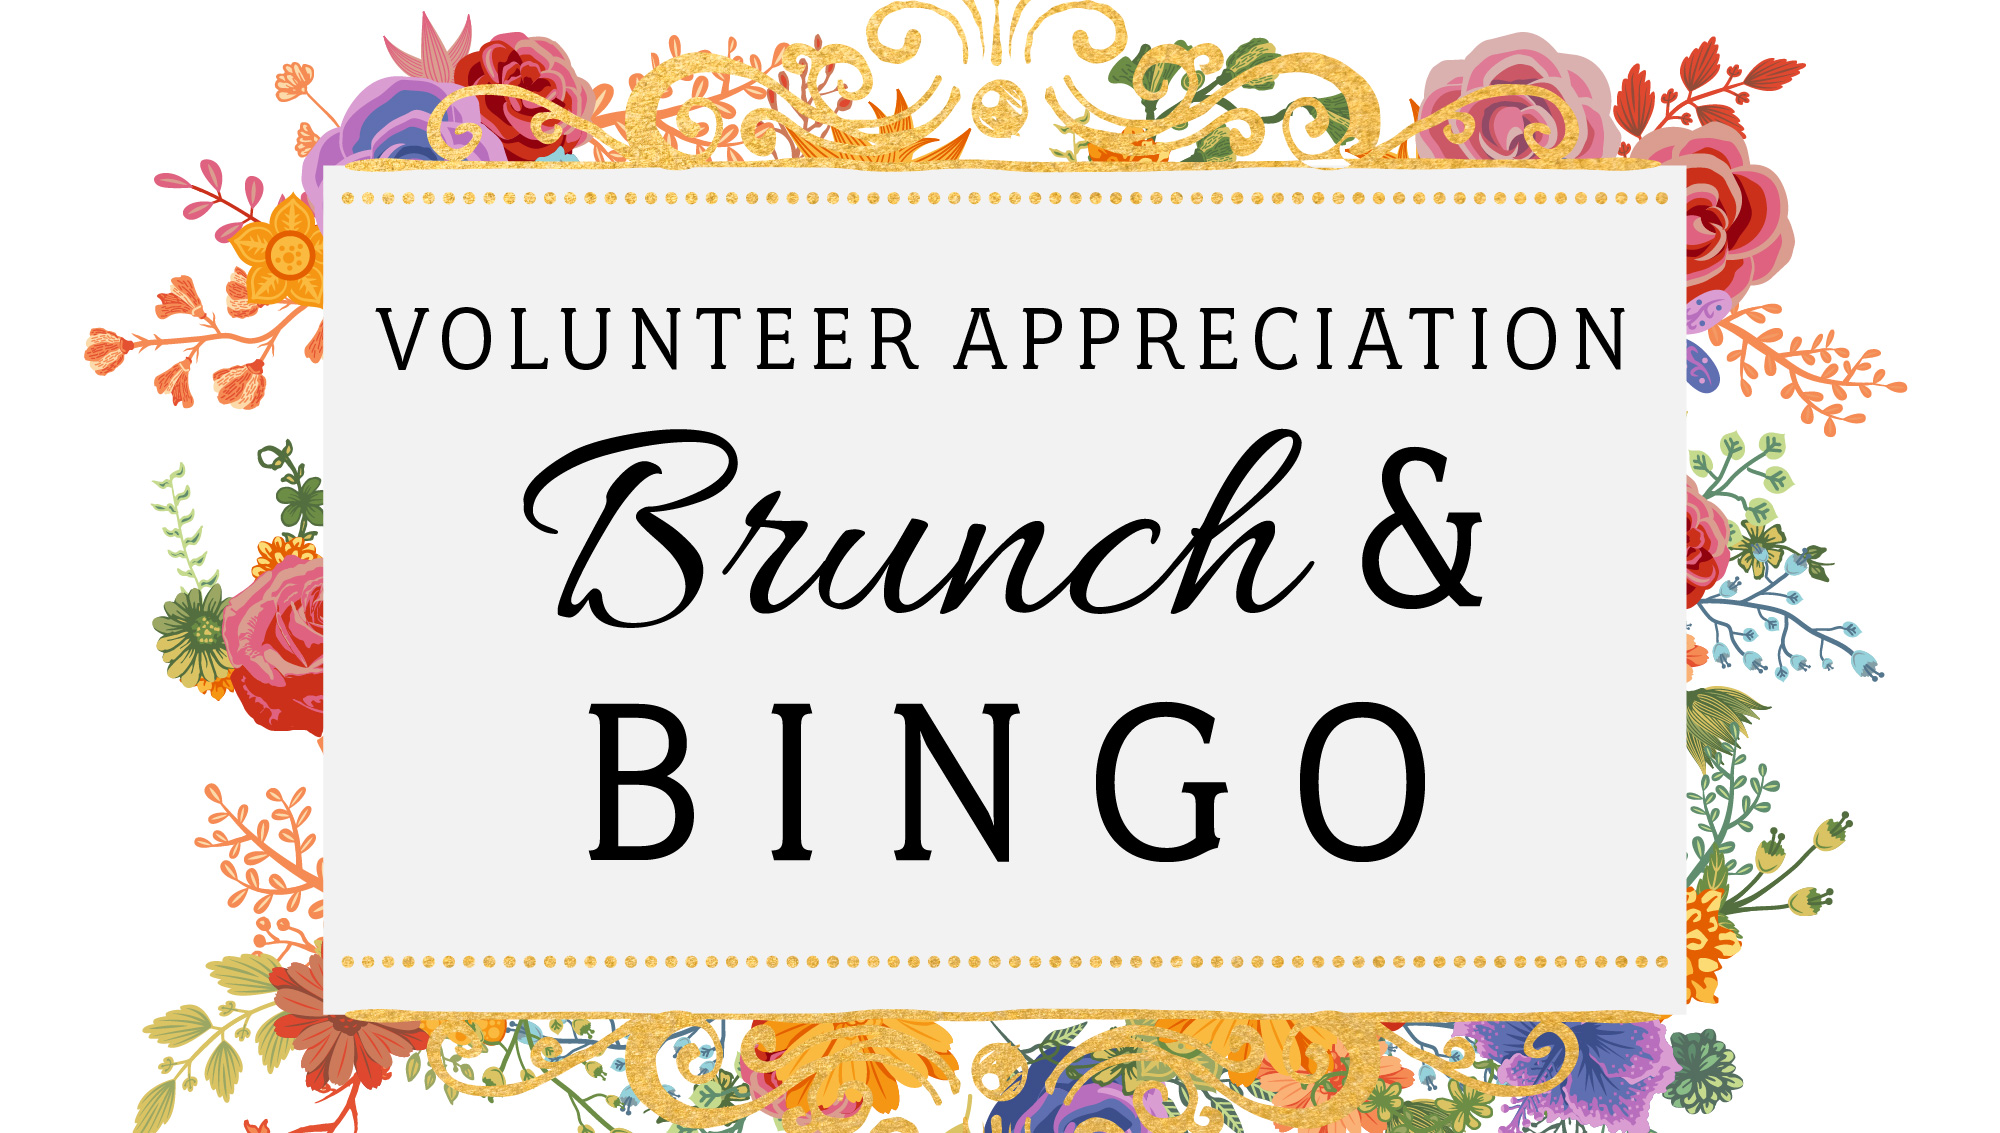 Volunteer Appreciation Brunch and Bingo